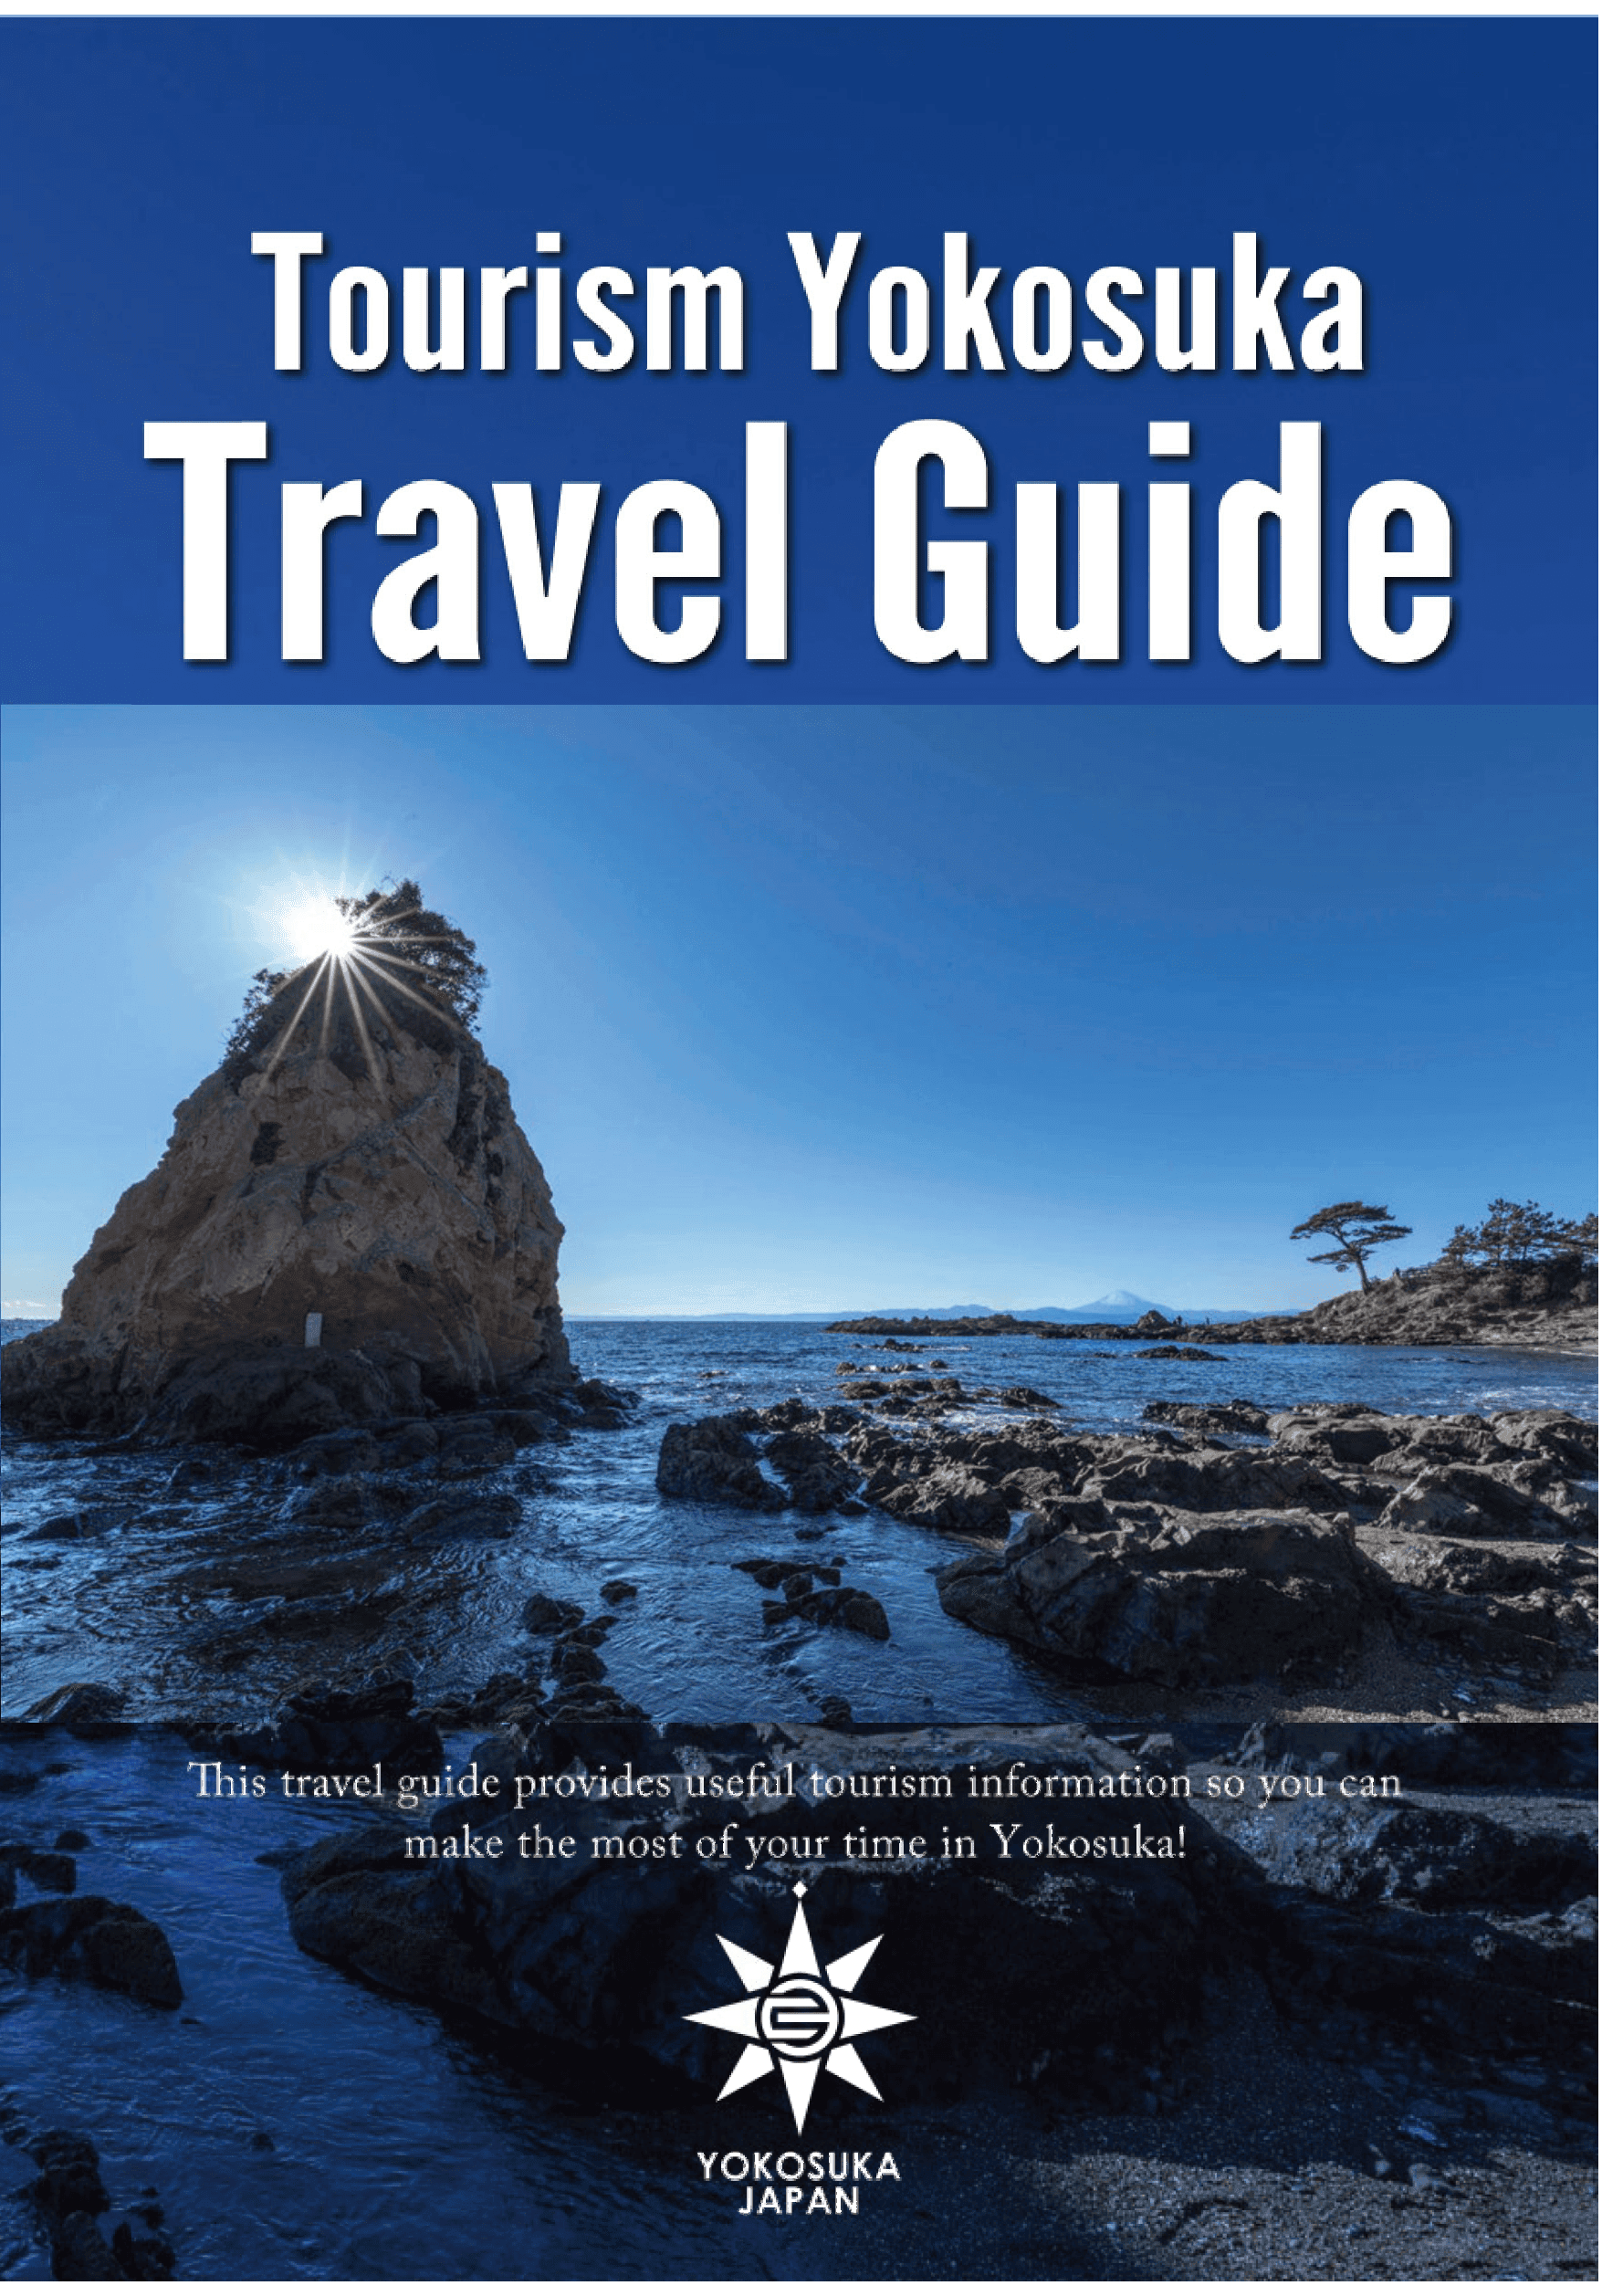 Tourism Yokosuka Travel Guide -YOKOSUKA GUIDE MAP-英語版